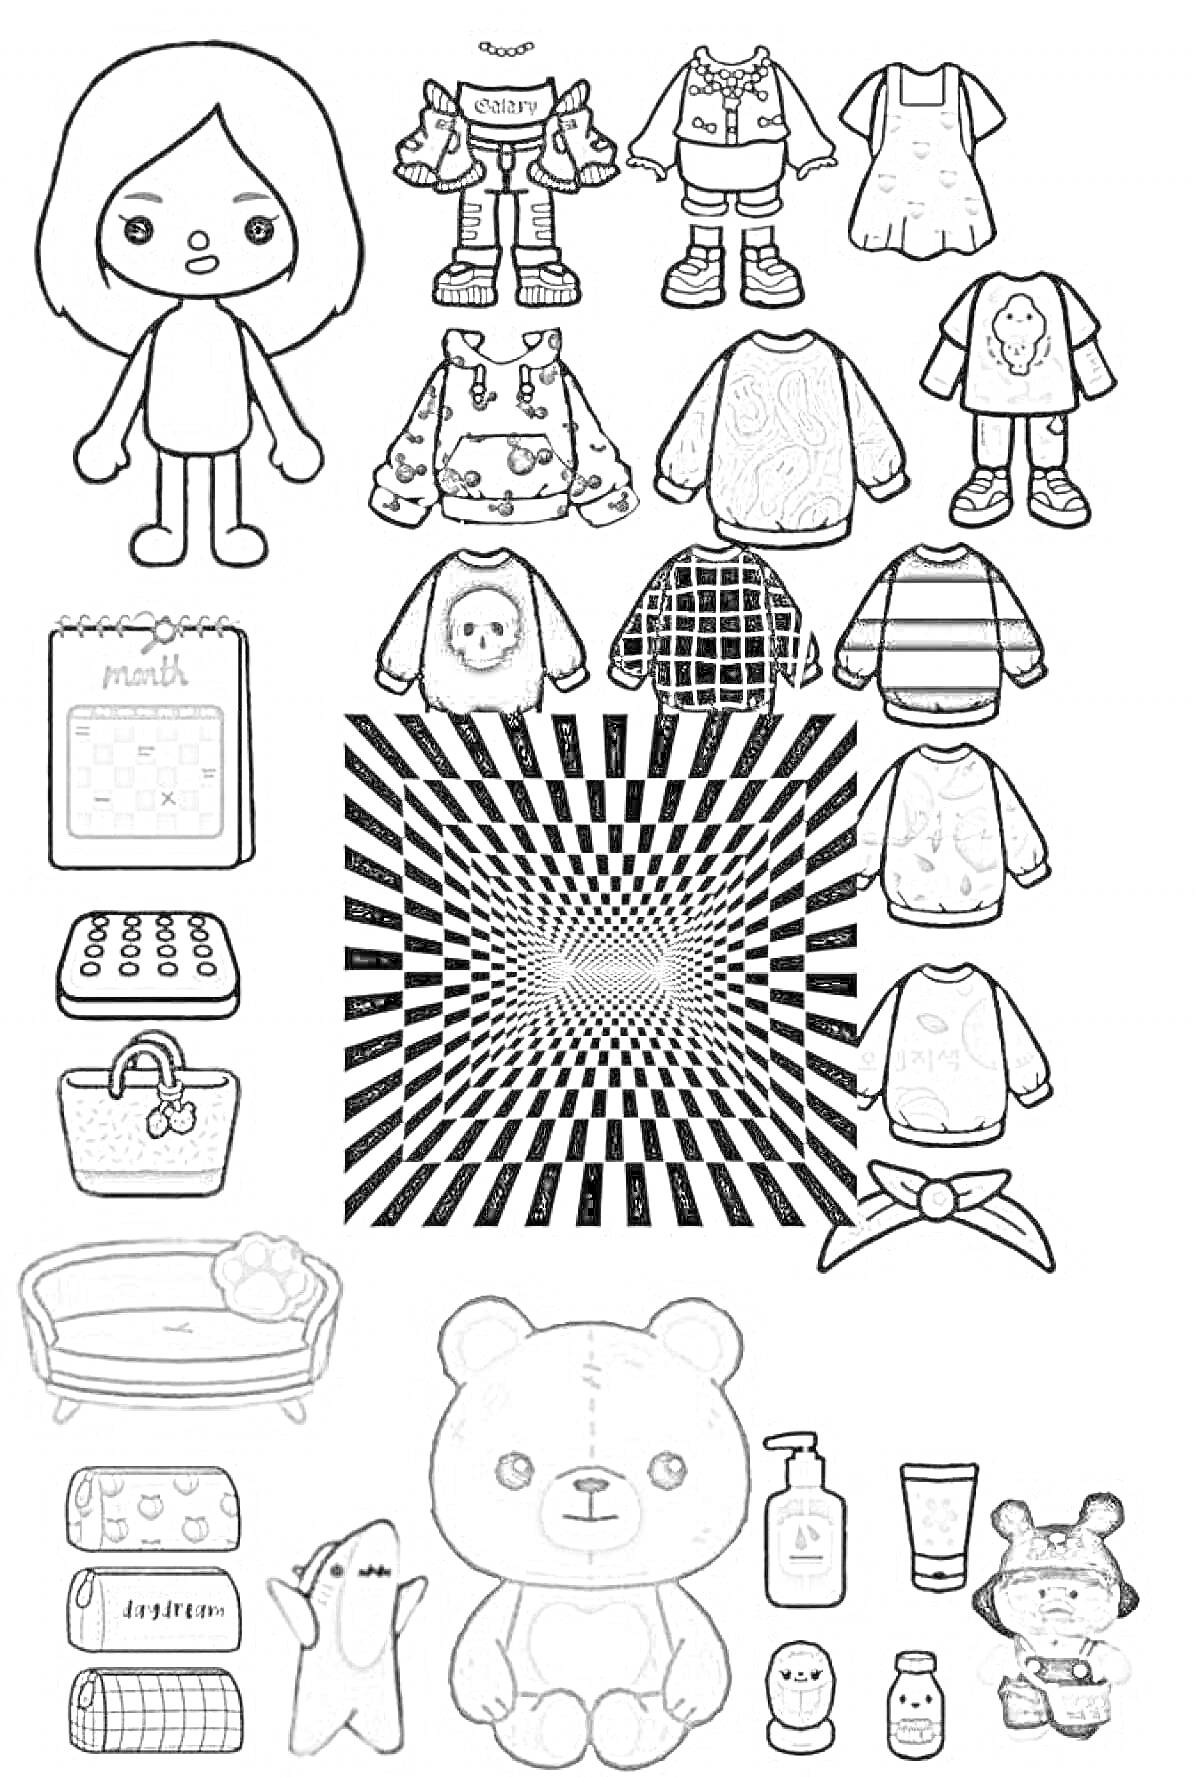 Раскраска Девочка с гардеробом, состоящим из разных комплектов одежды, сумок, игрушек и предметов для ванной комнаты.